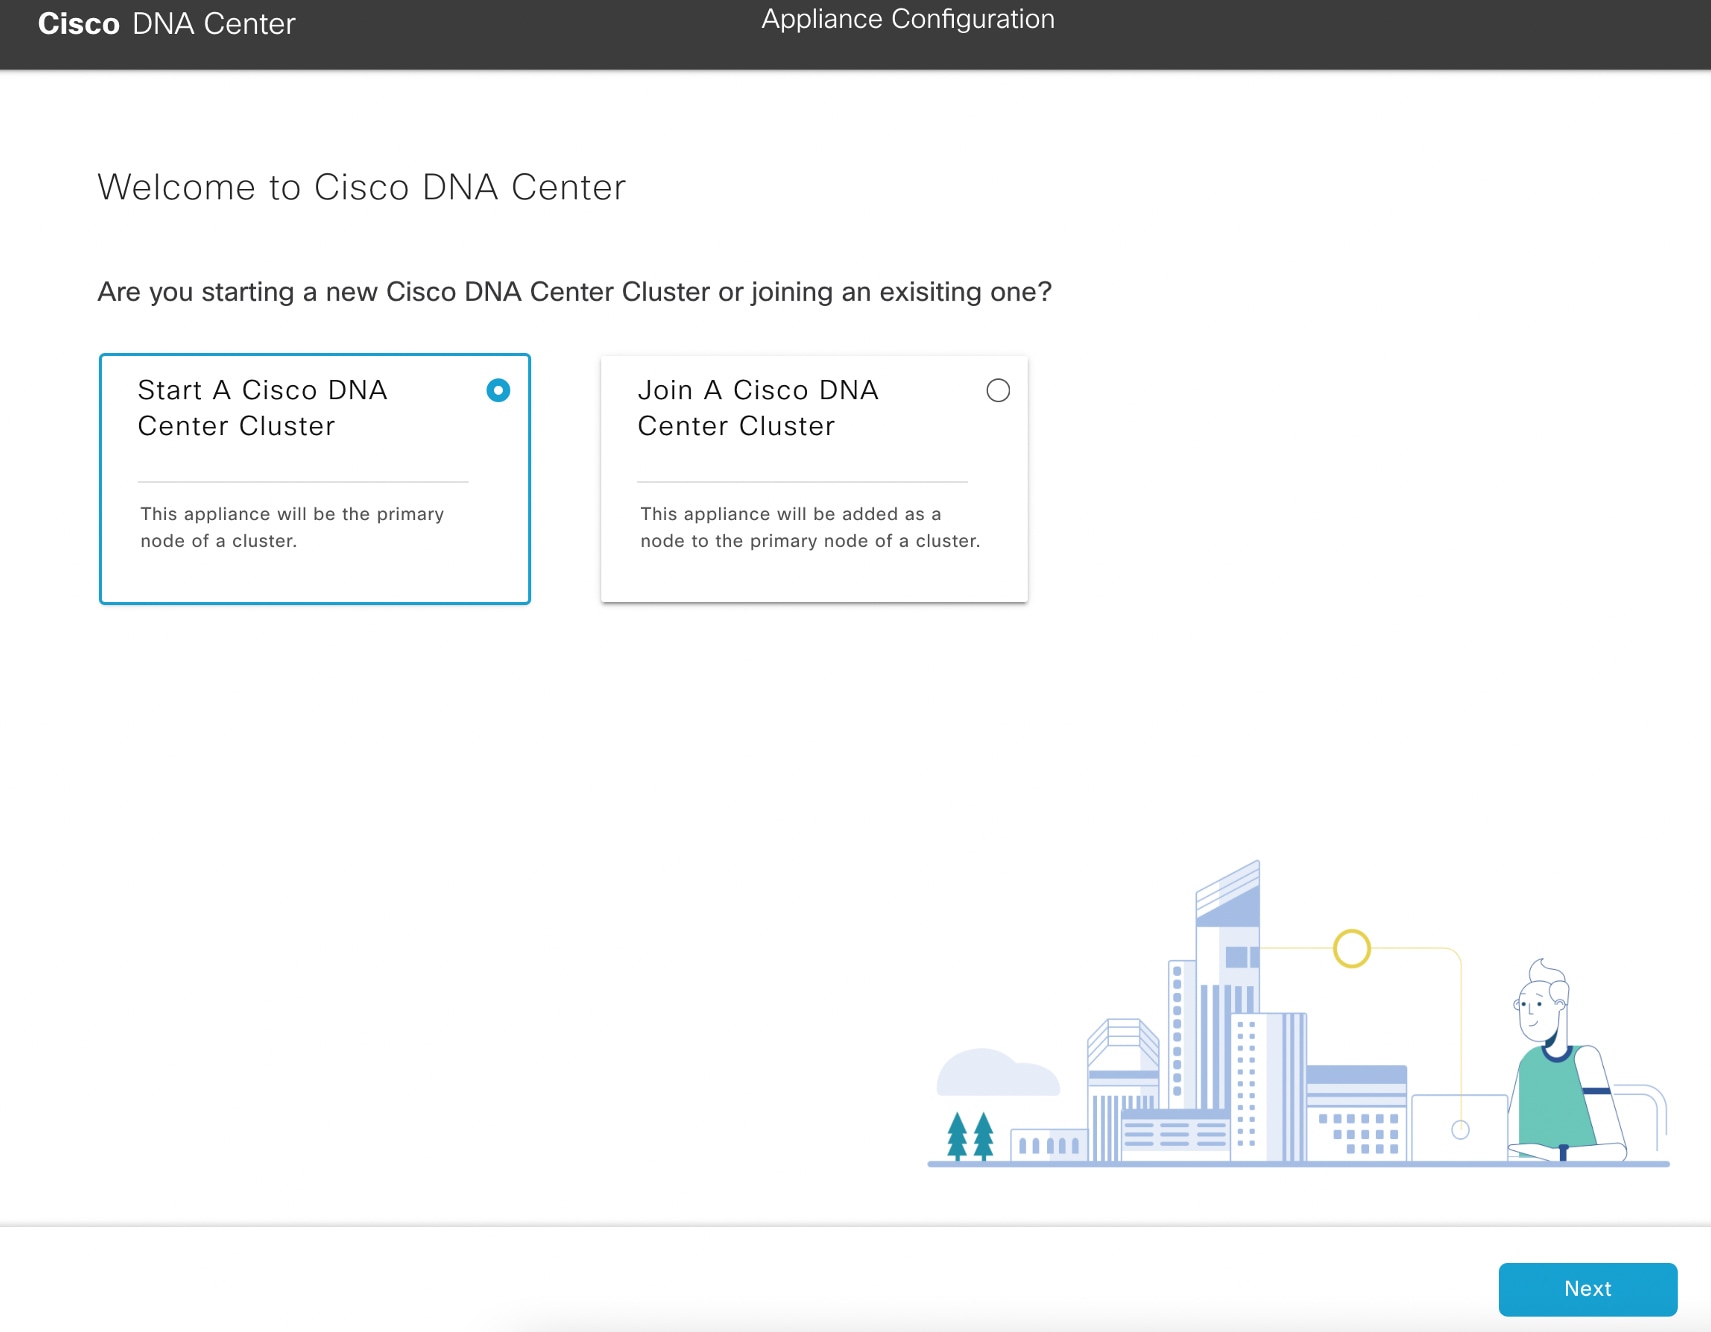 [Appliance Configuration] 画面に、Cisco DNA Center クラスタの開始と参加という 2 つのオプションが表示されます。